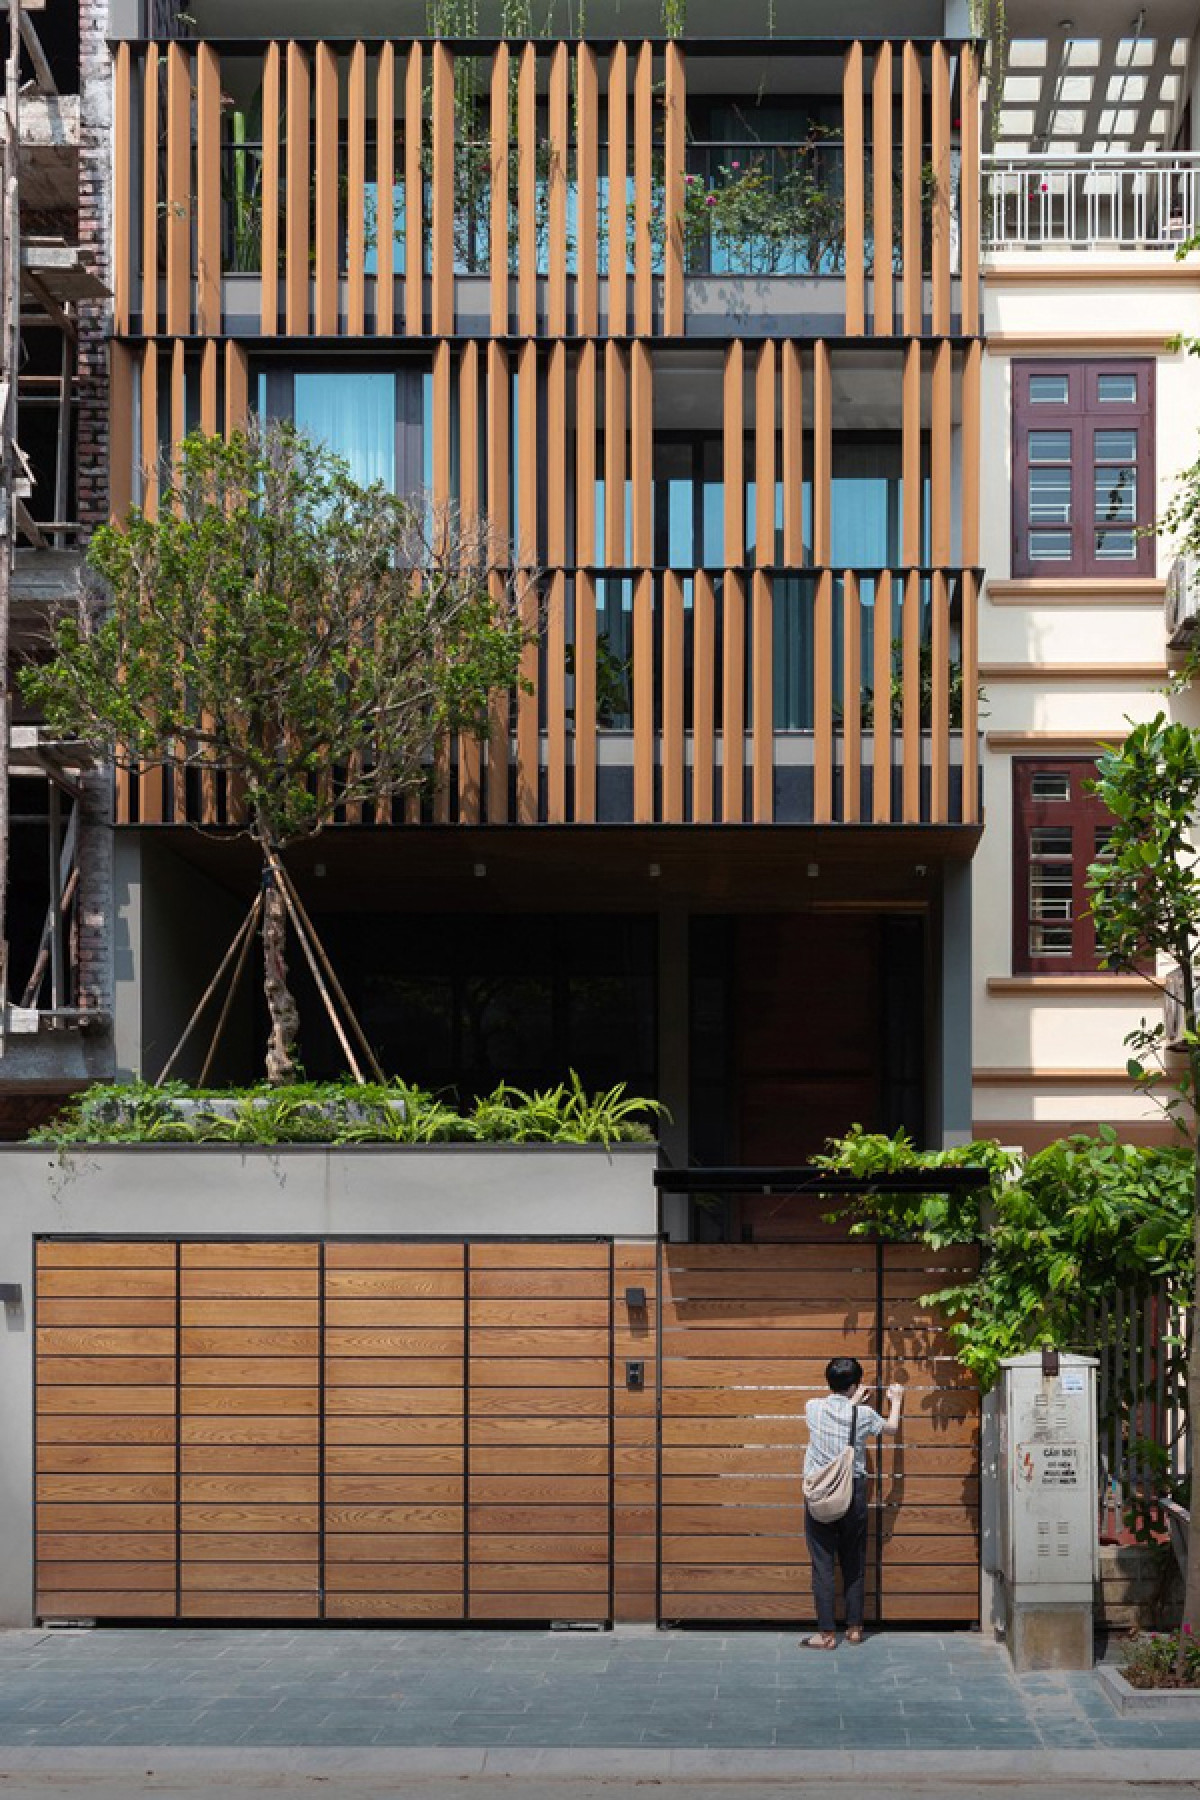 Công trình nằm ở quận Long Biên, Hà Nội, có cấu trúc của một ngôi nhà phố với hai mặt thoáng trước và sau. Các kiến trúc sư thiết kế đưa ra một hình ảnh ngôi nhà hiện đại mà vẫn gần gũi nhờ chất liệu gỗ ở hệ cổng và lam mặt tiền.